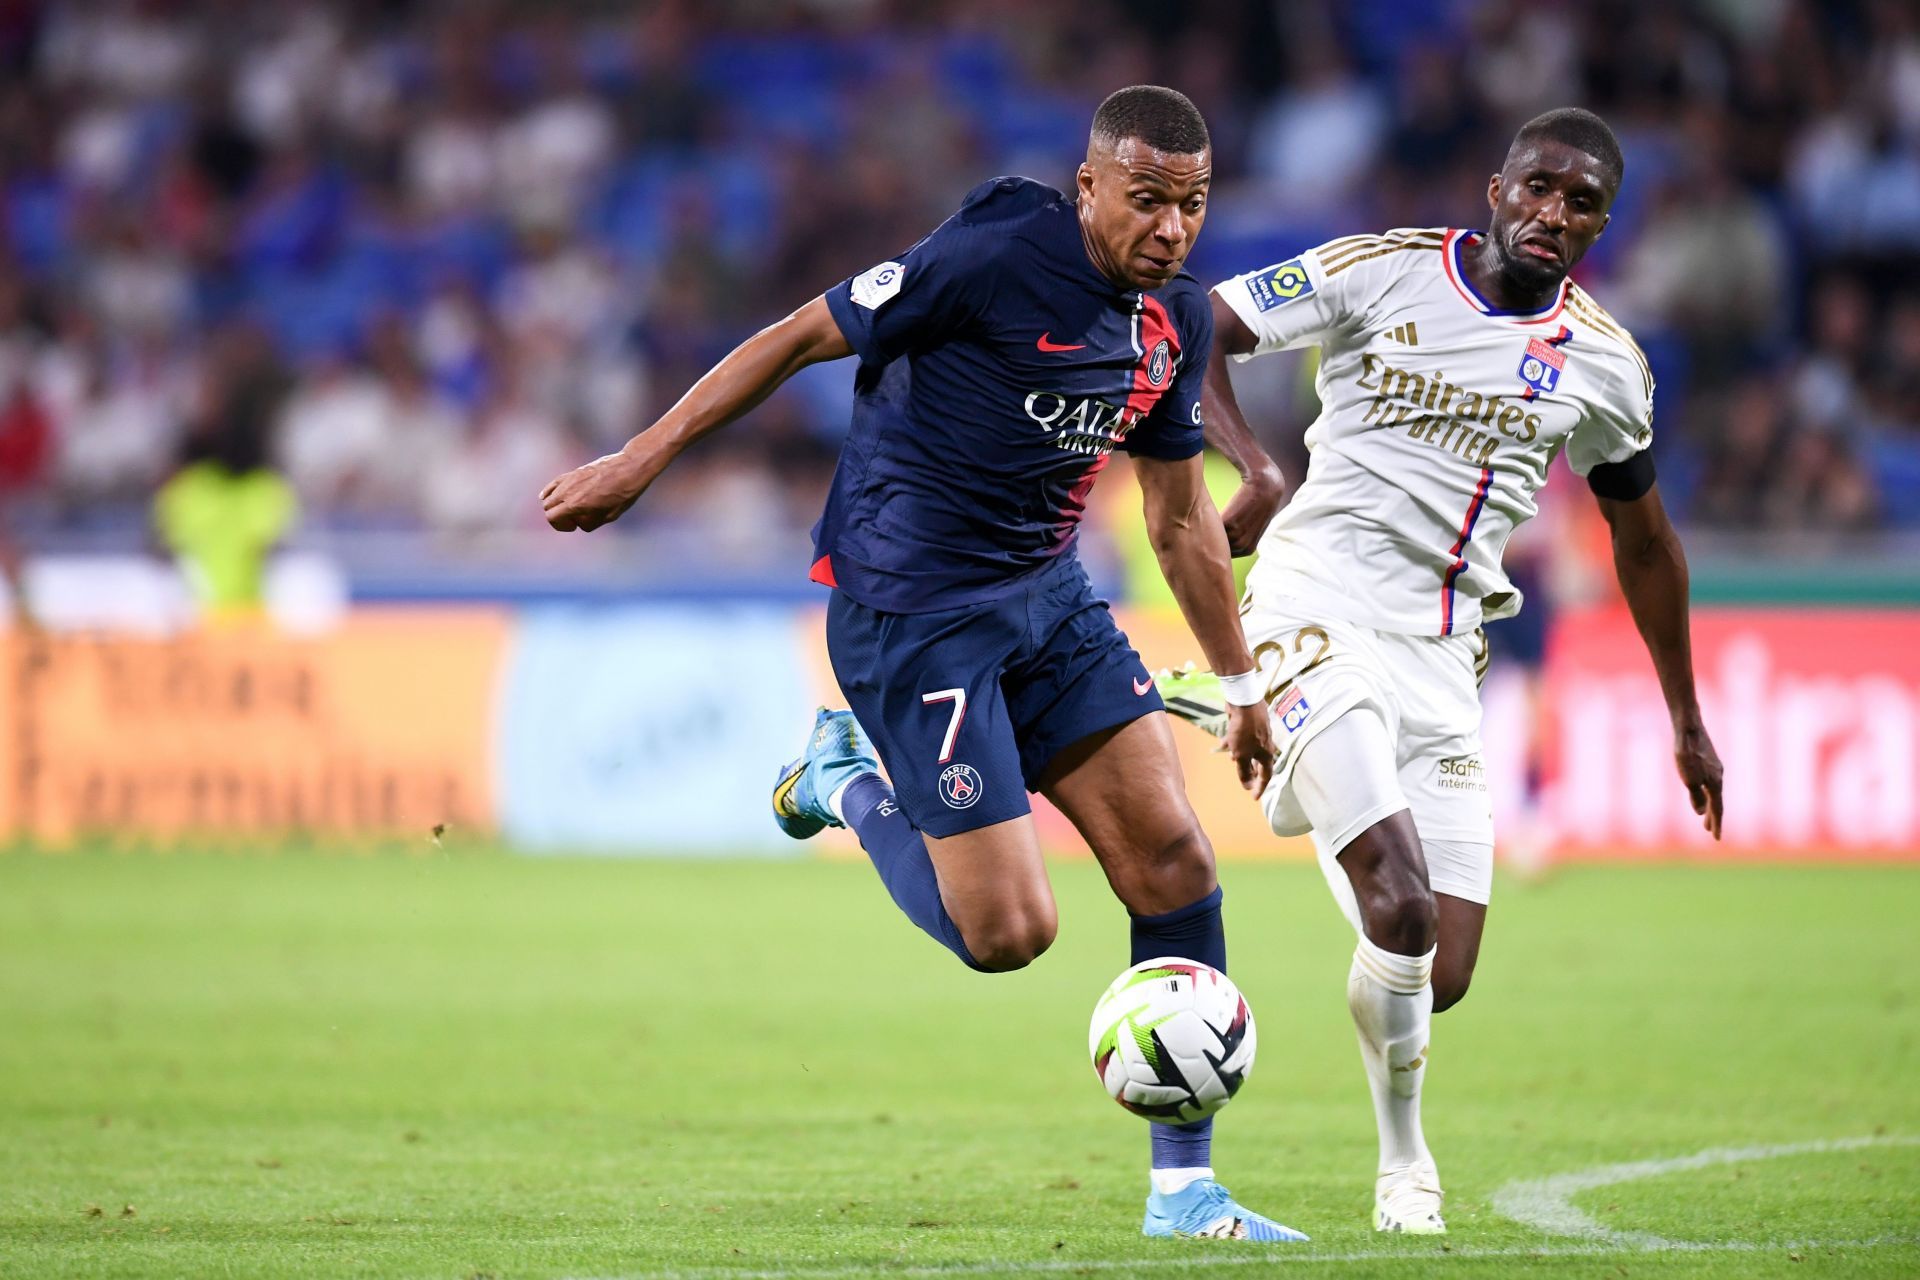 Lyon square off against Paris Saint-Germain in Coupe de France final on Saturday